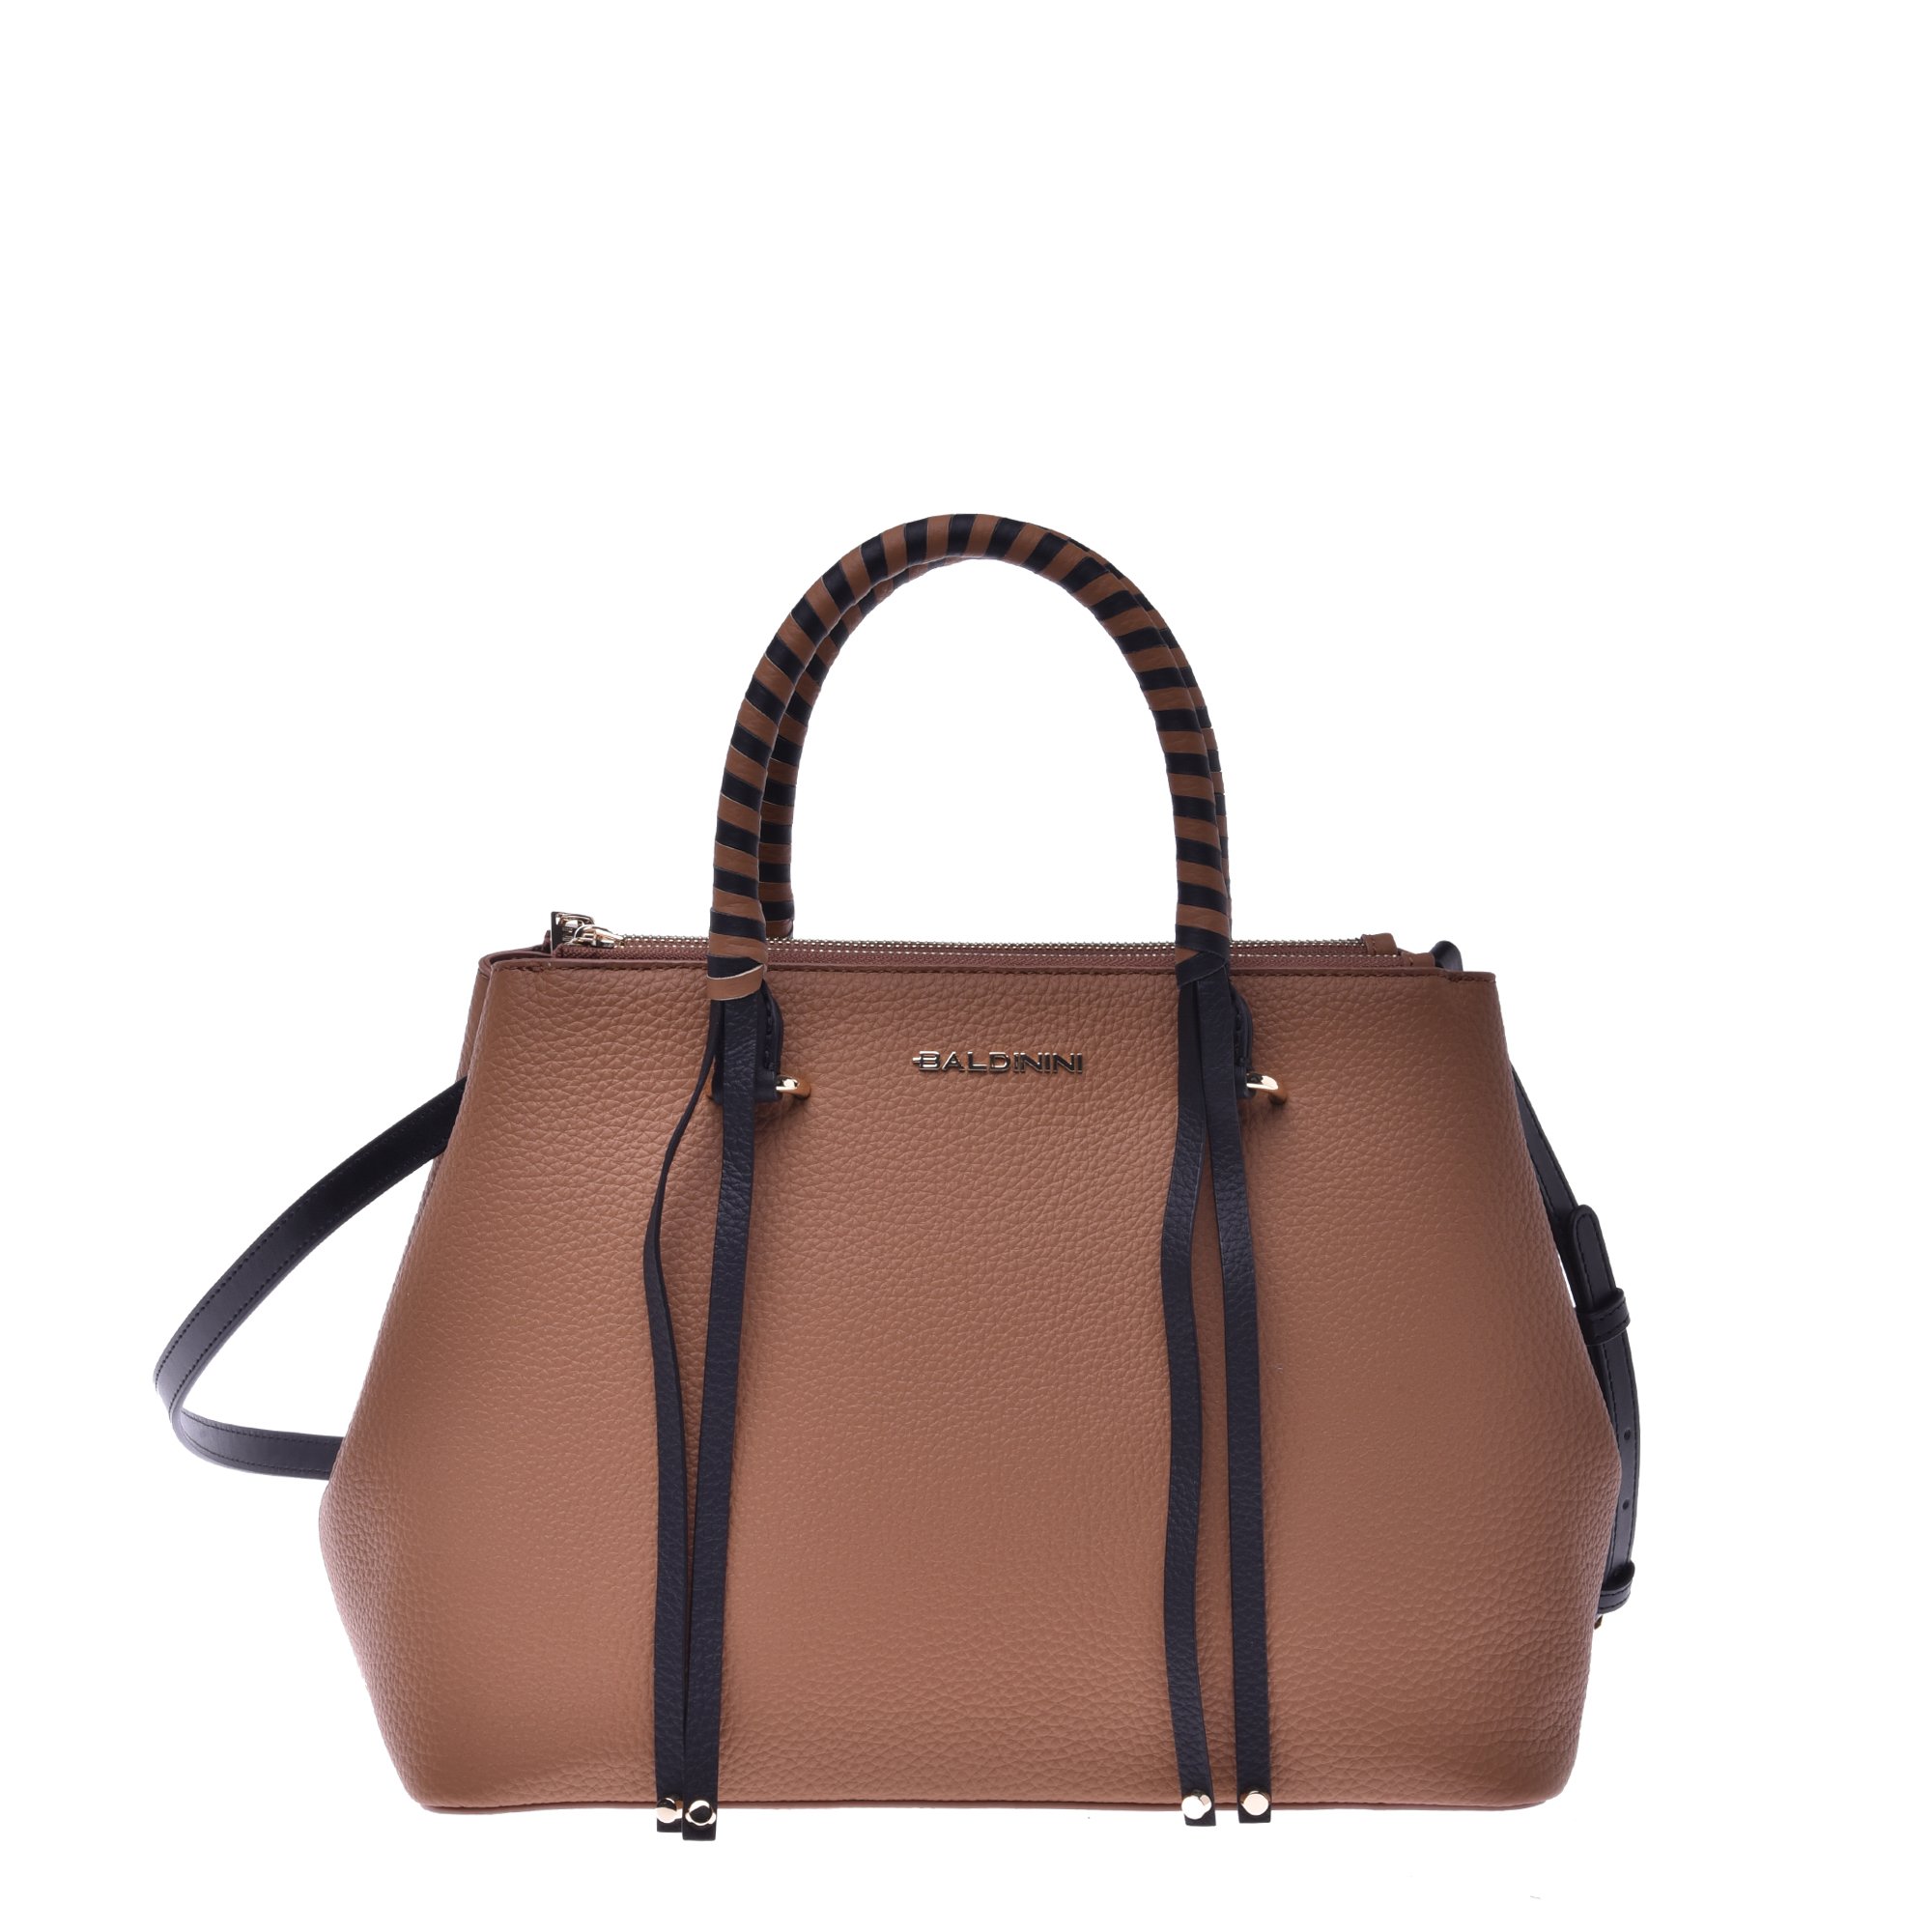 Handbag in black and tan calfskin image